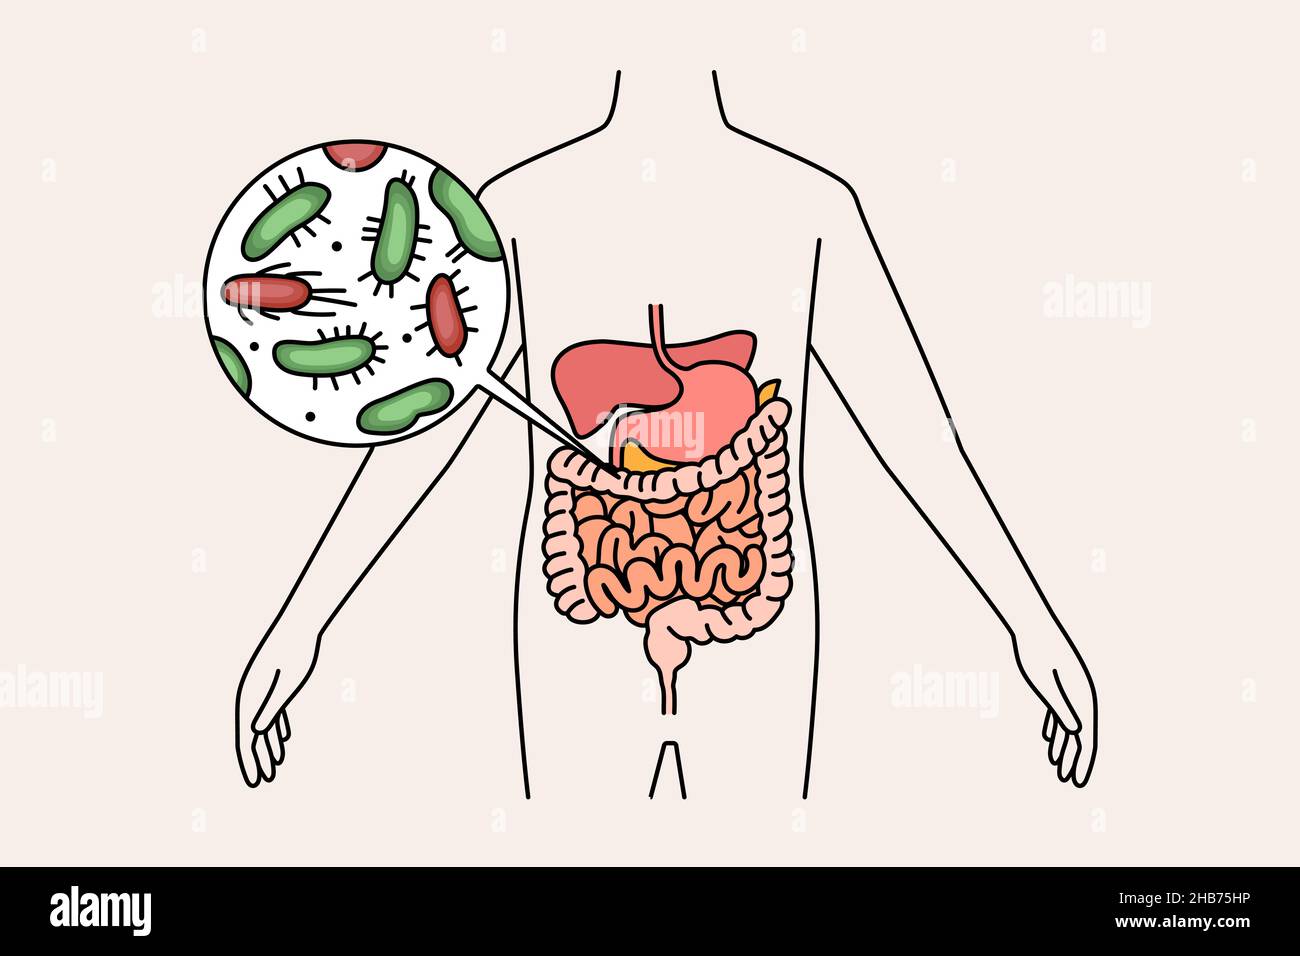 Sistema digestivo e concetto di intestino. Corpo umano con microrganismi batterici verdi e rossi in illustrazione vettoriale dello stomaco e dell'intestino Illustrazione Vettoriale